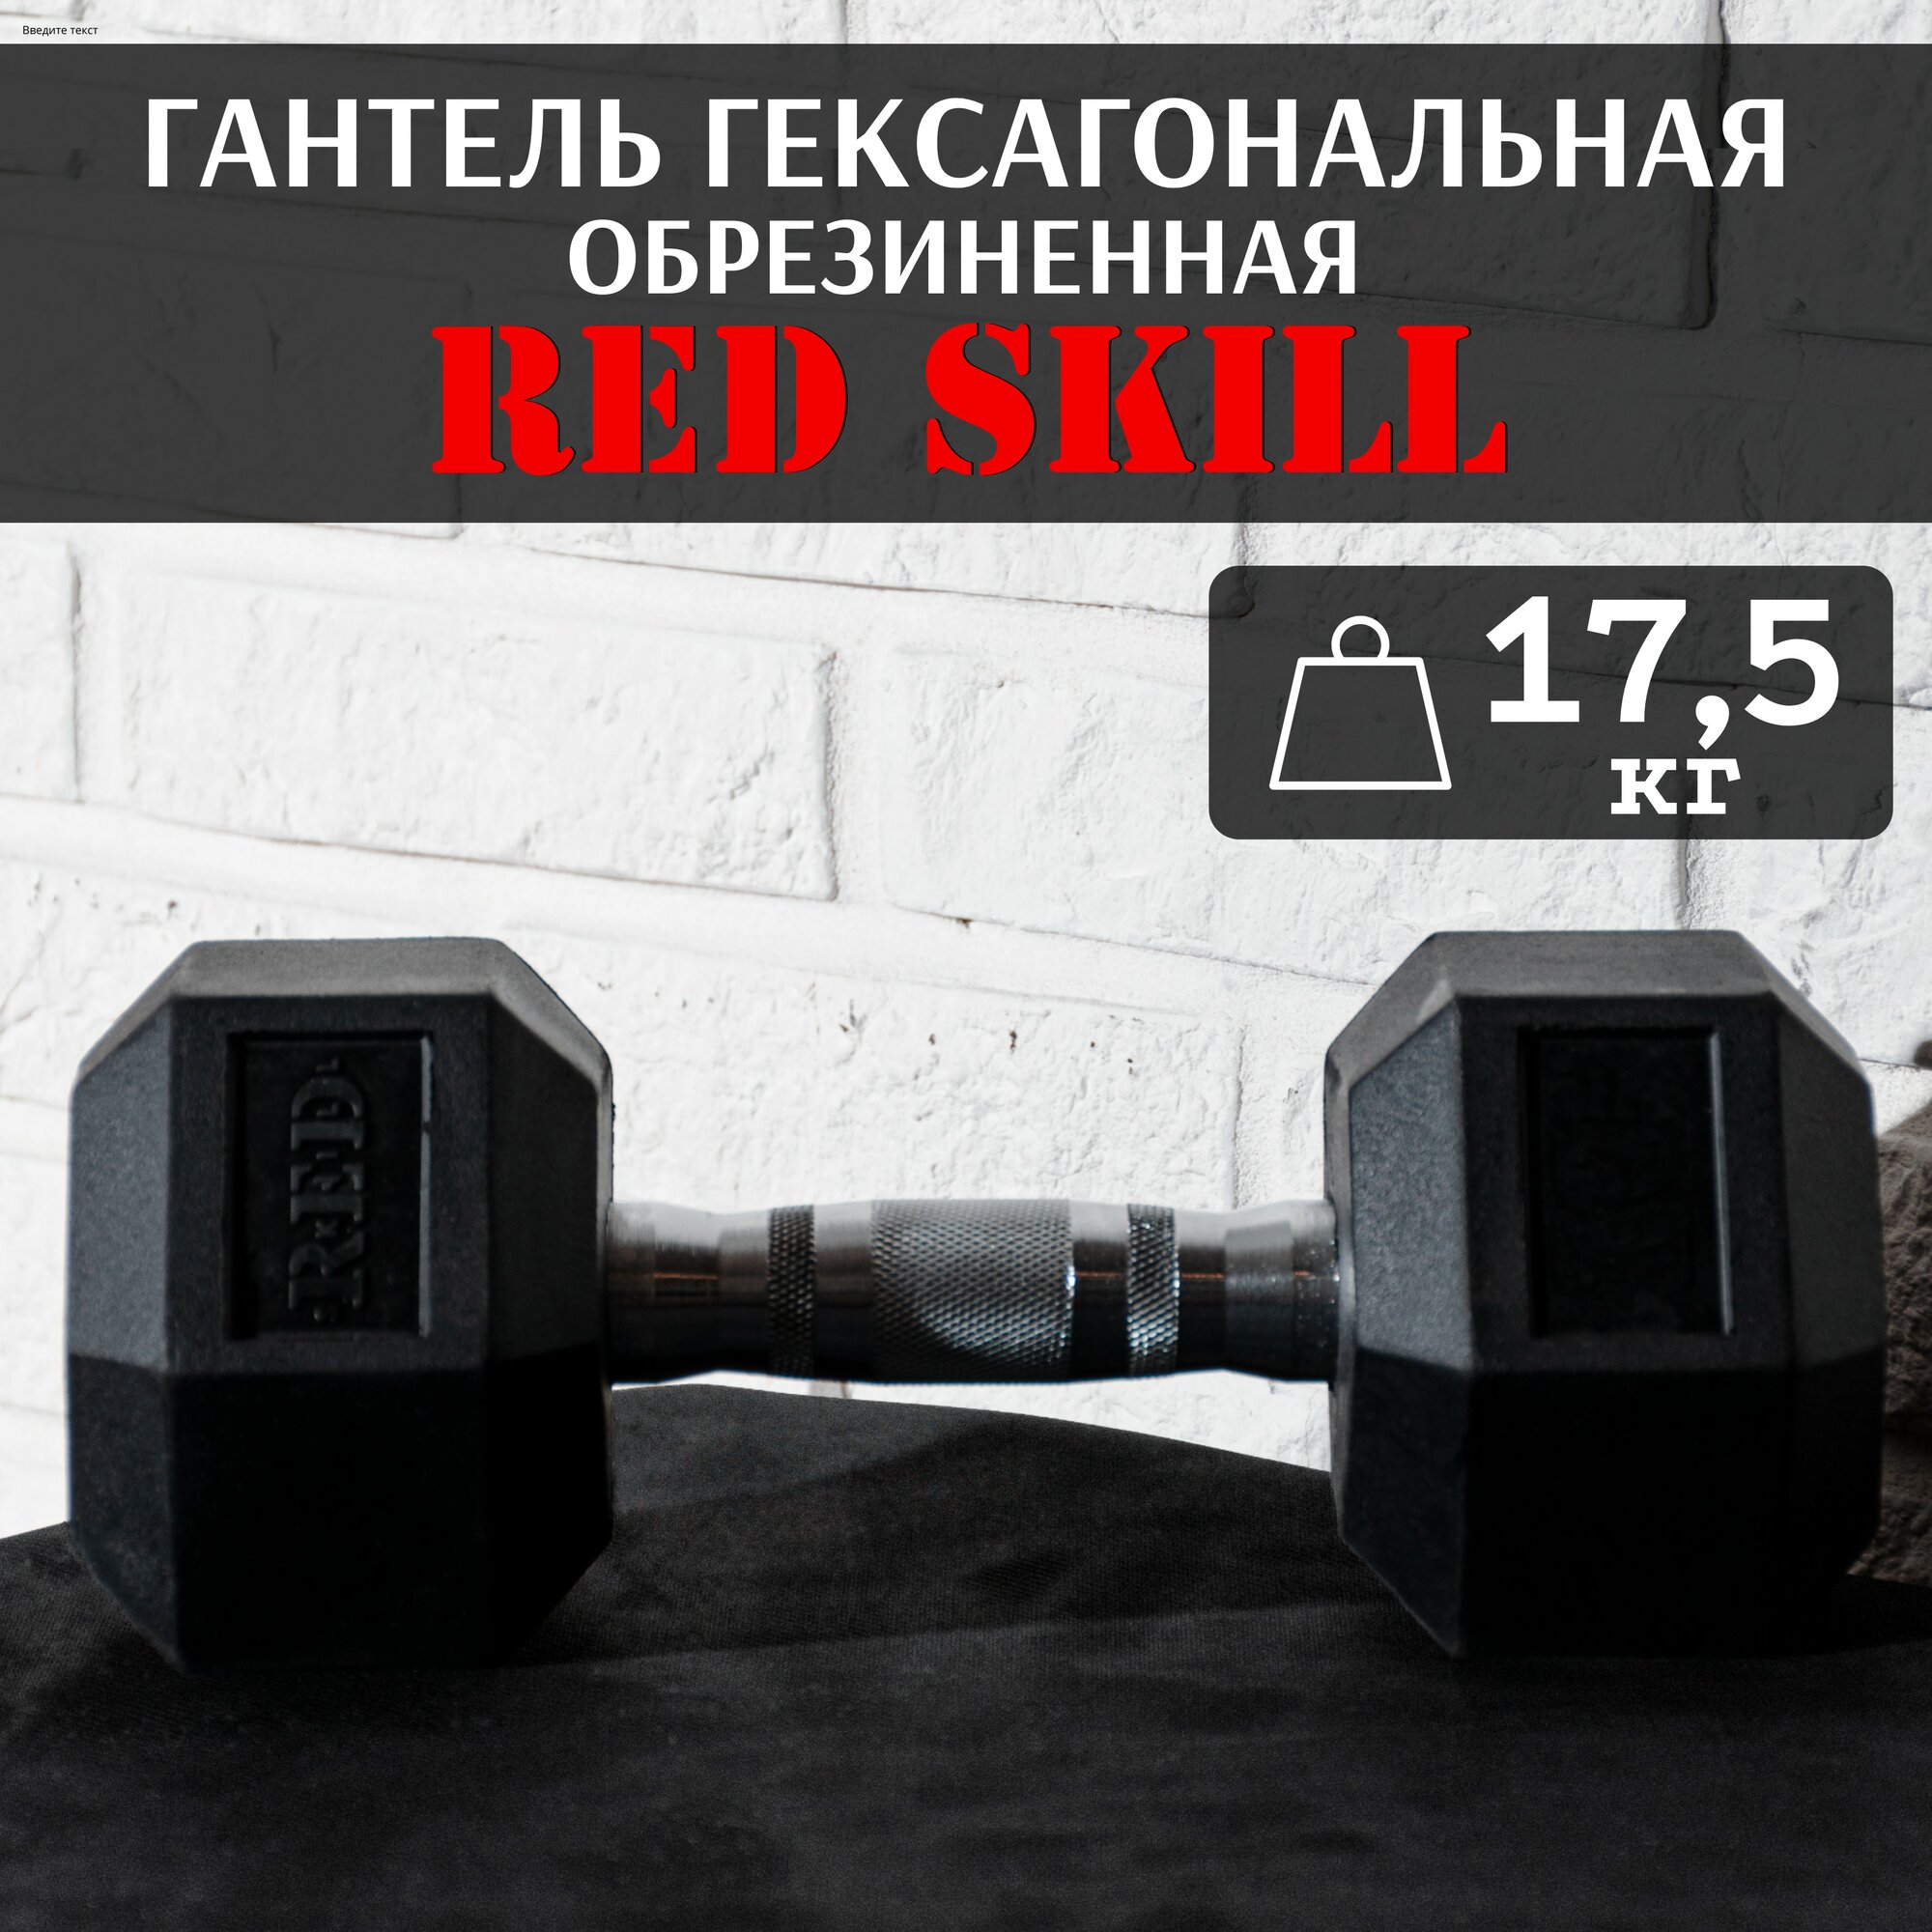 Гантель гексагональная резиновая RED Skill, 17,5 кг